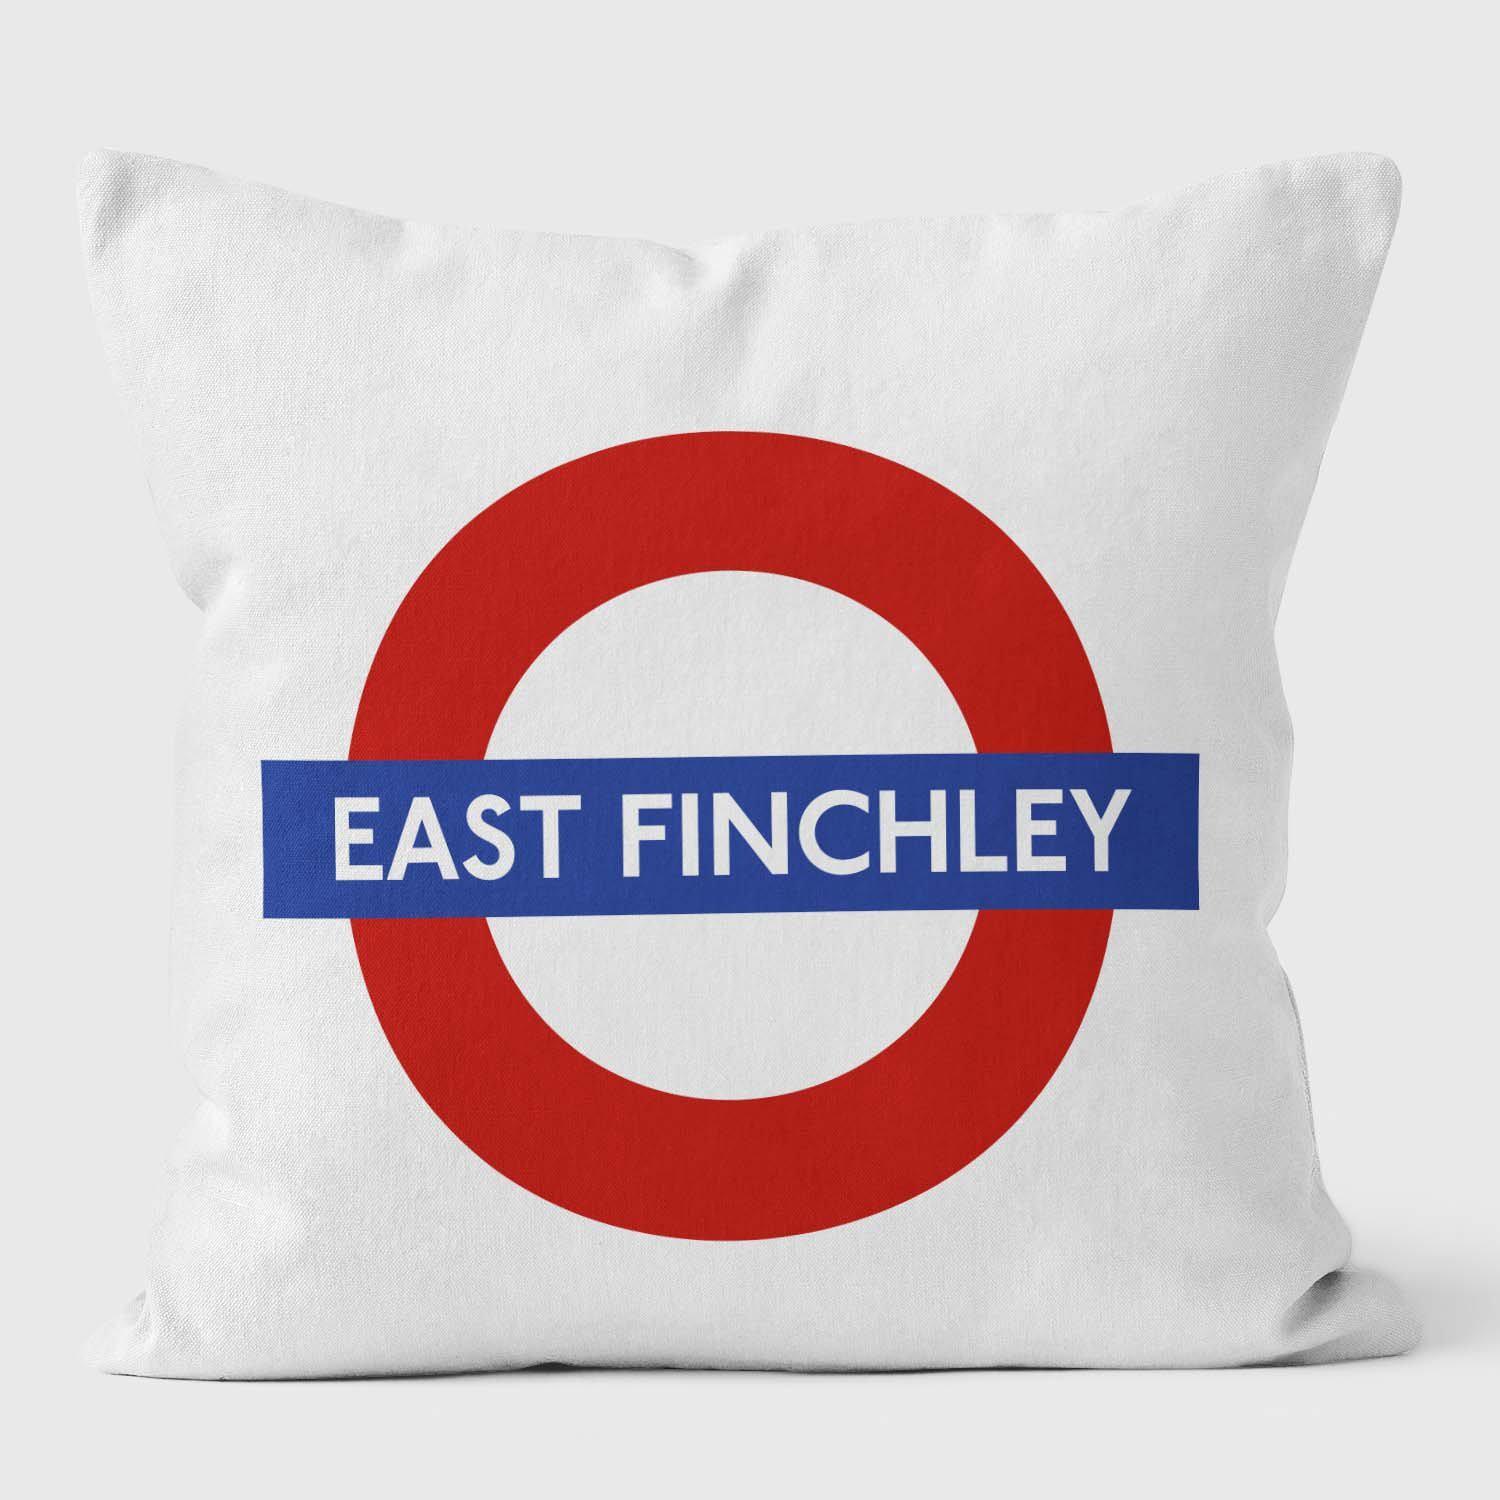 East Finchley London Underground Tube Station Roundel Cushion - Handmade Cushions UK - WeLoveCushions